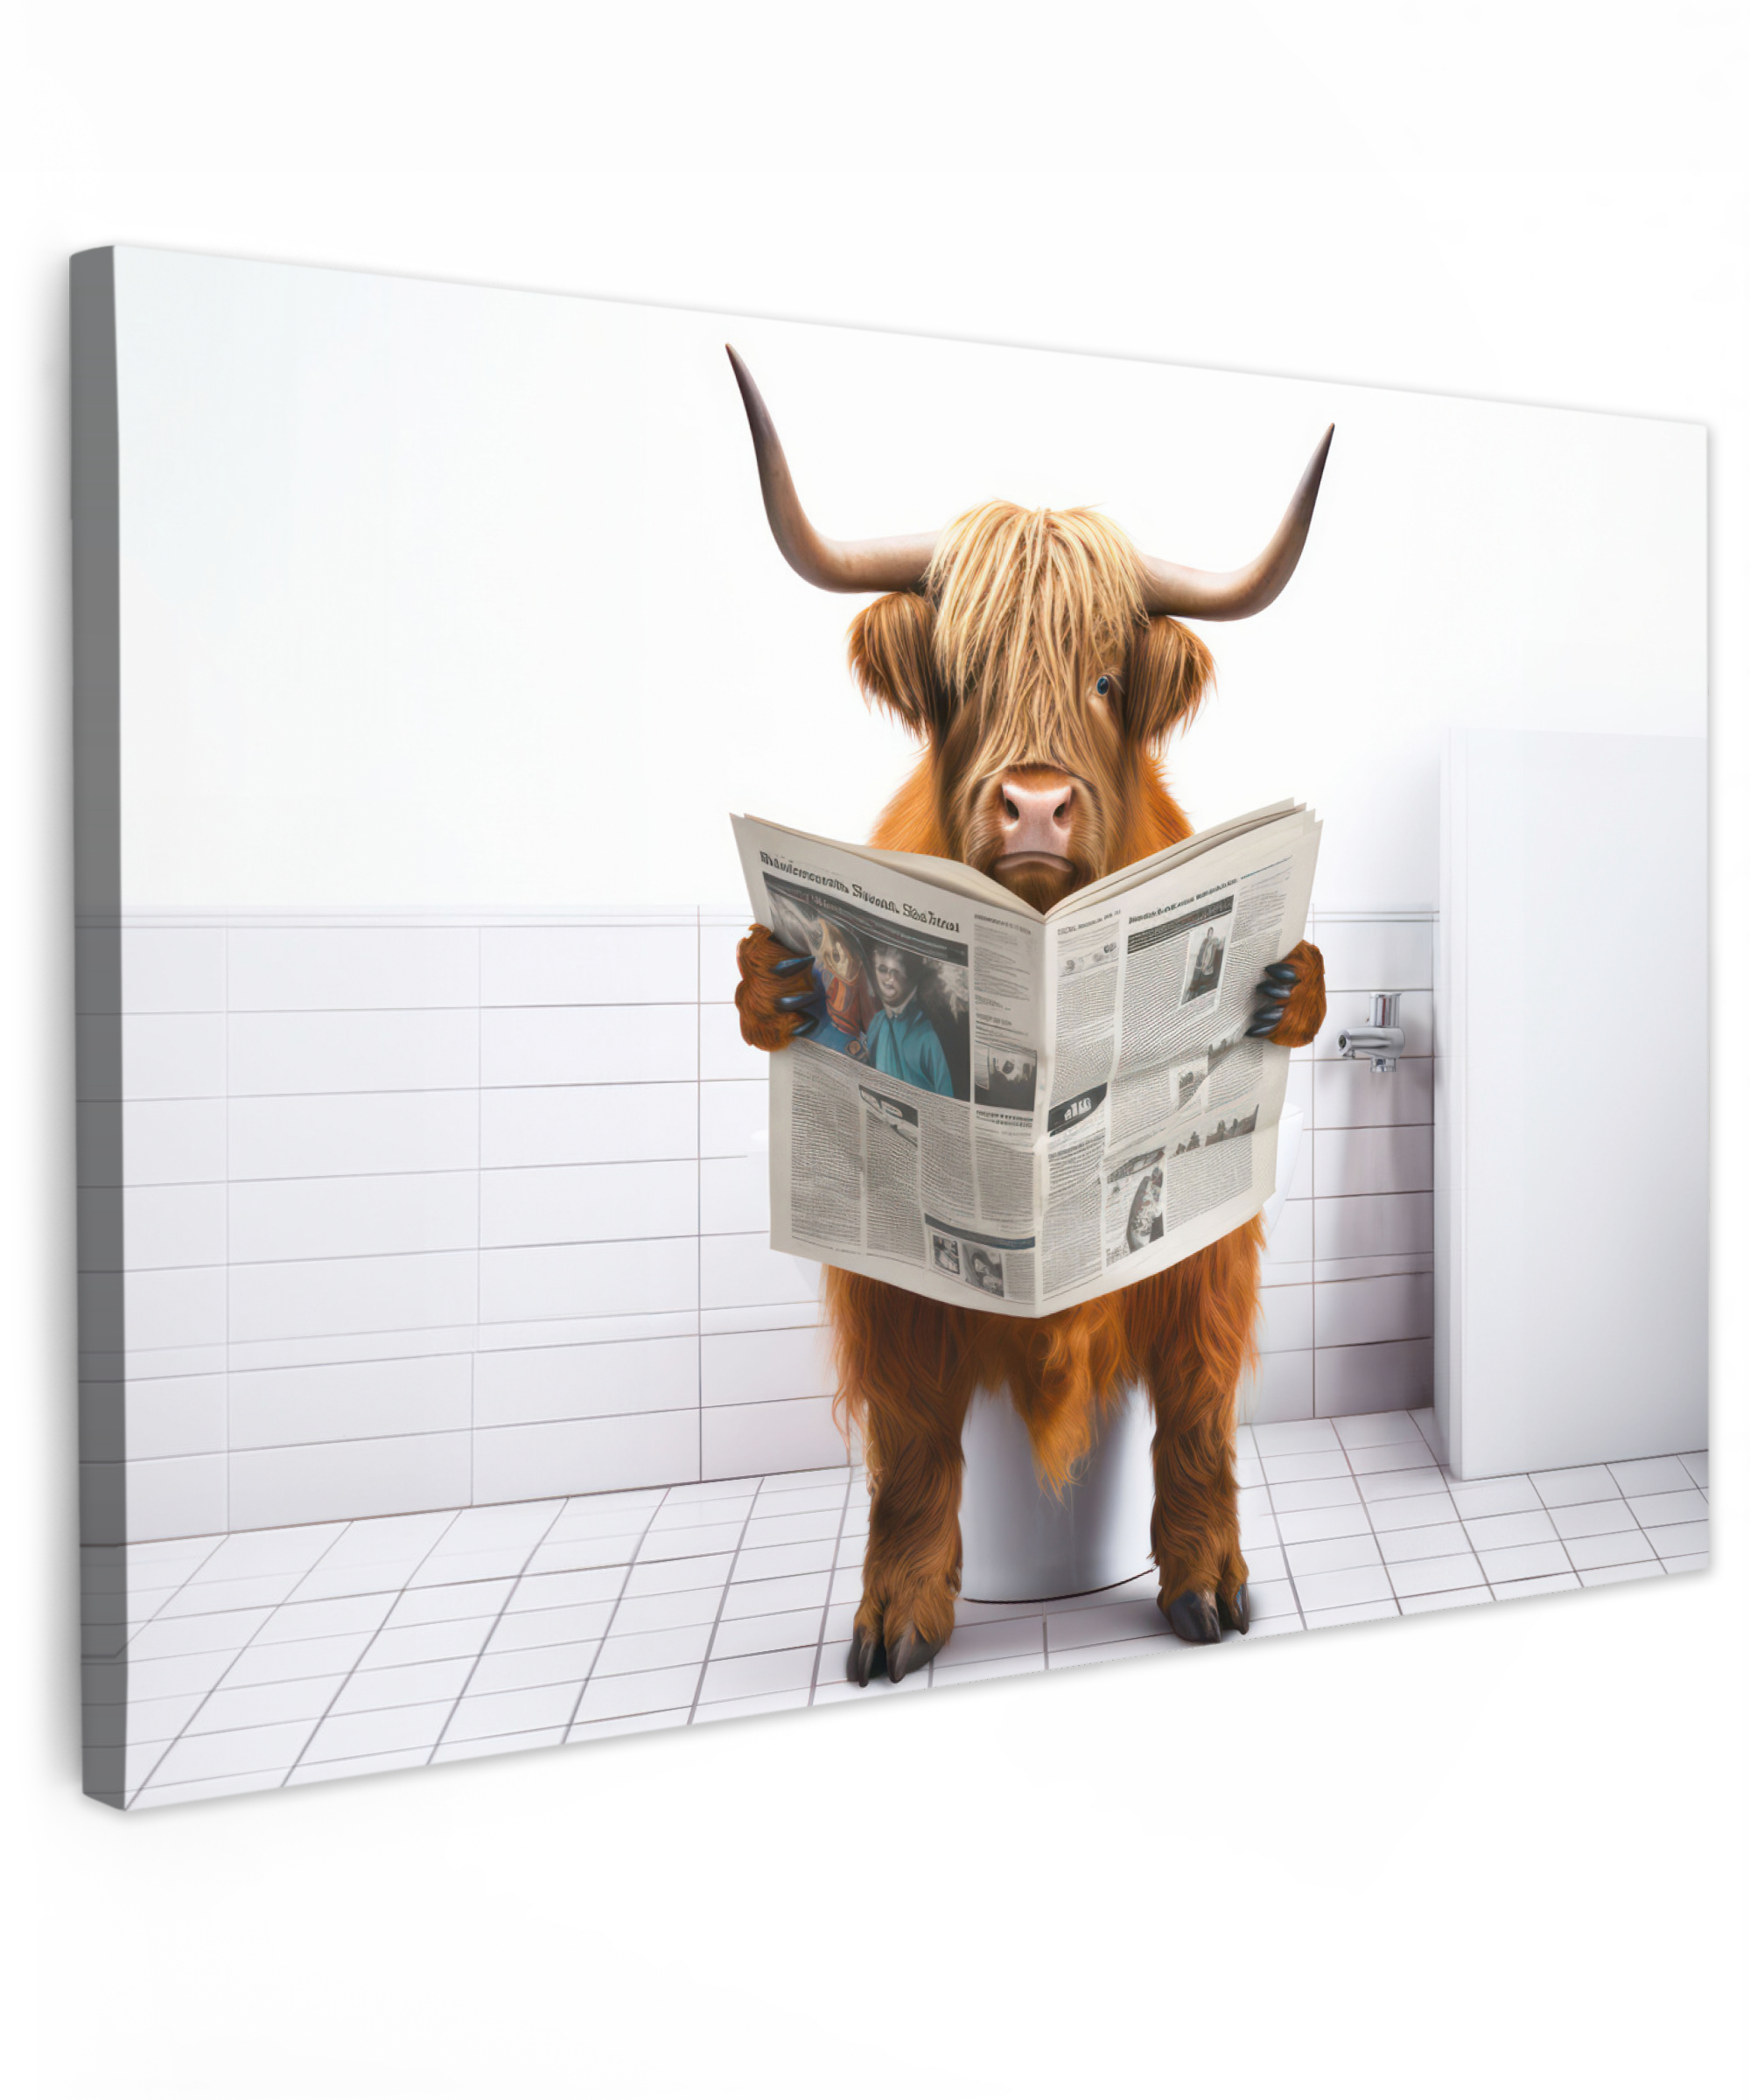 Tableau sur toile - Highlander écossais - Journal - Toilettes - WC - Blanc - Vache